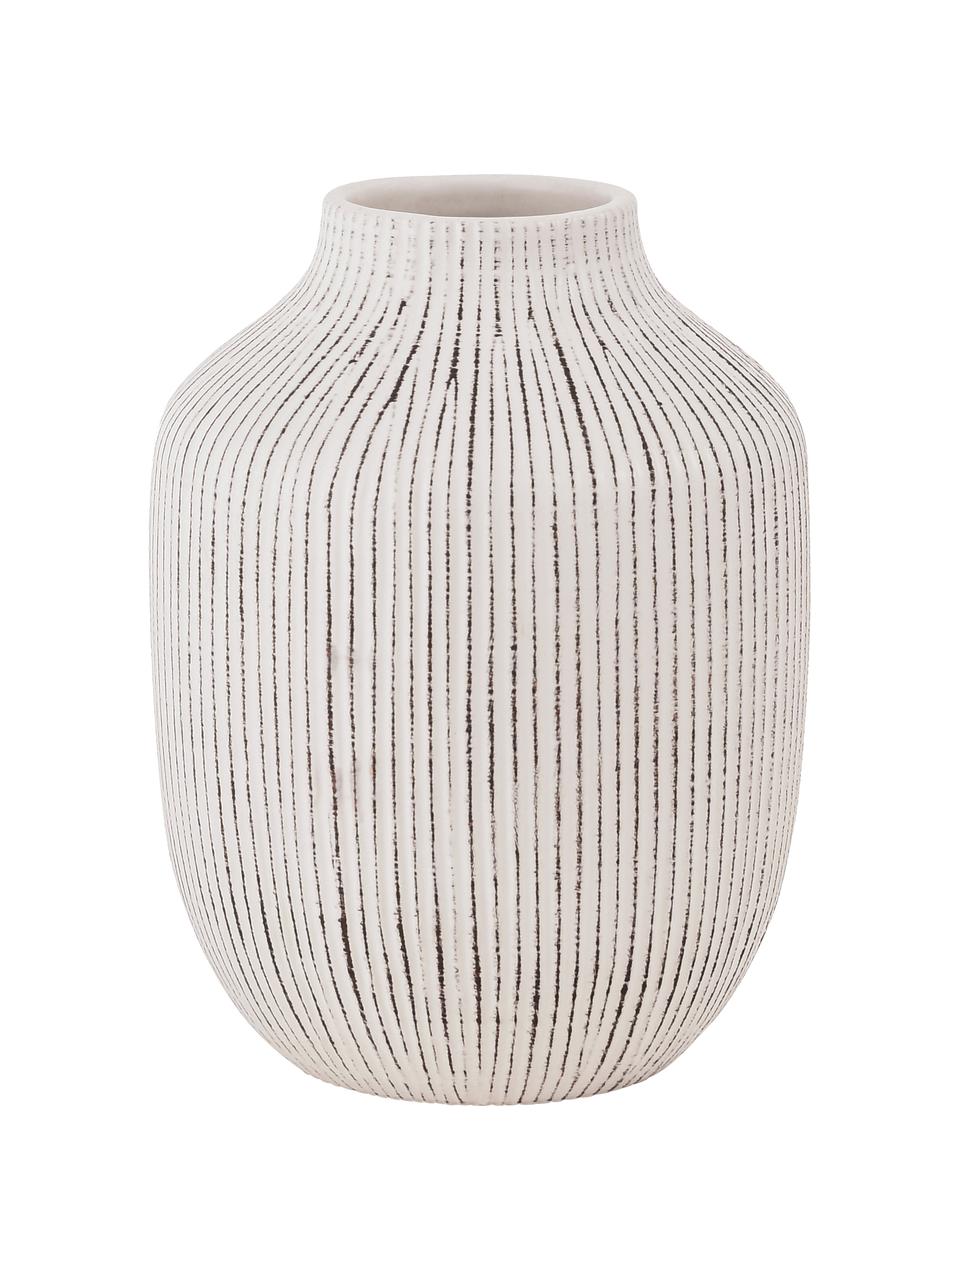 Kameninová váza s drážkovaným vzorem Cream, Kamenina, Bílá, Ø 15 cm, V 21 cm